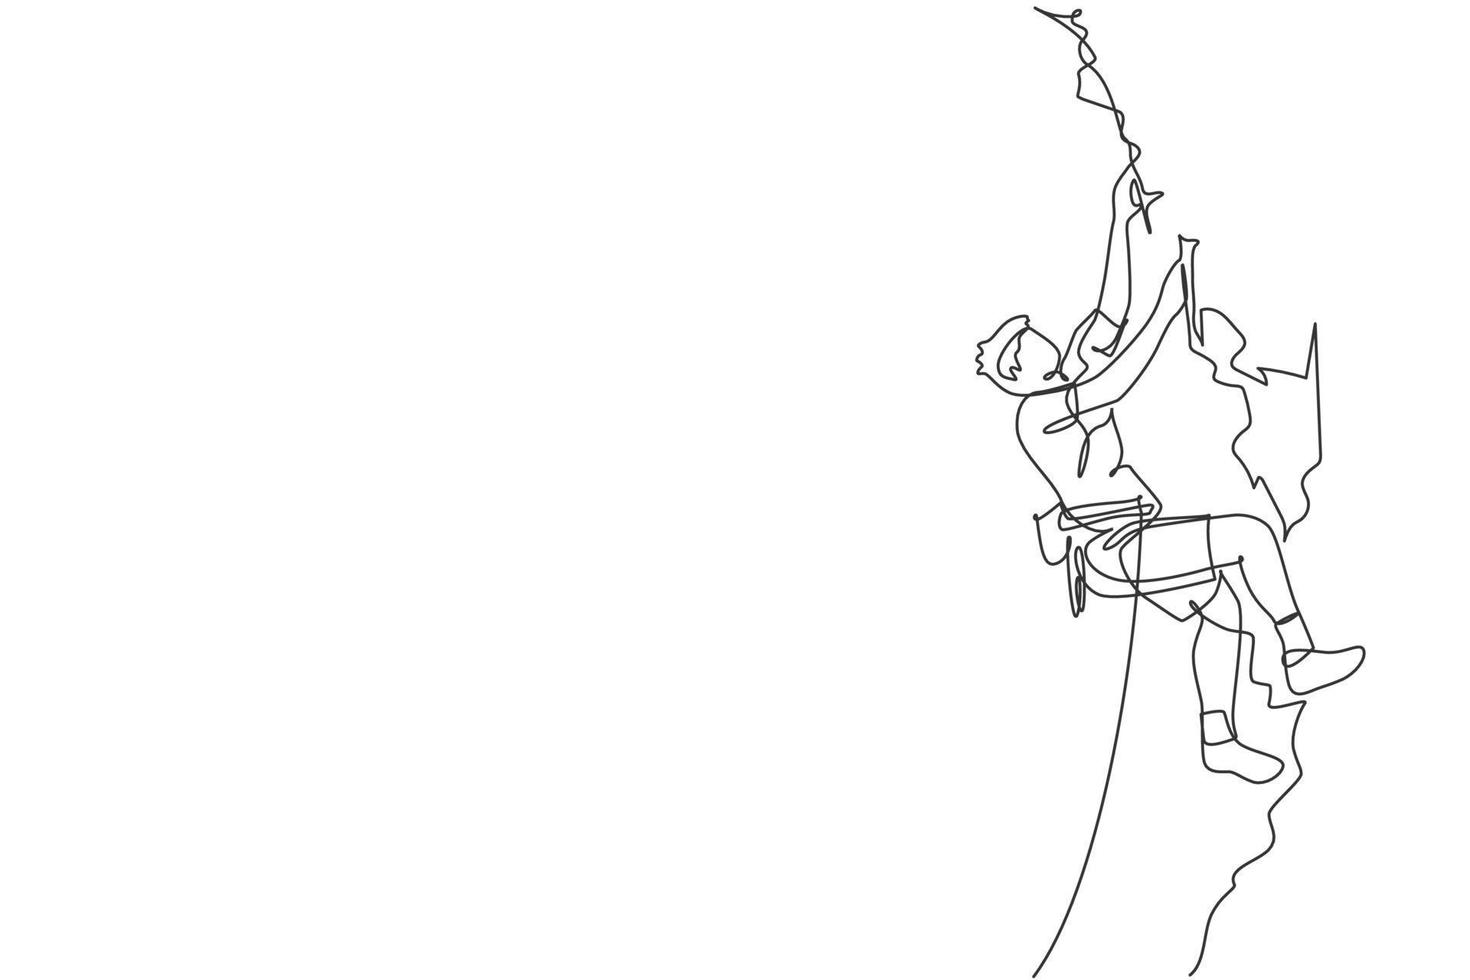 en enda linjeteckning av ung aktiv man som klättrar på klippberget håller säkerhetsrep vektorillustrationgrafik. extrem utomhussport och bouldering koncept. modern kontinuerlig linjeritningsdesign vektor